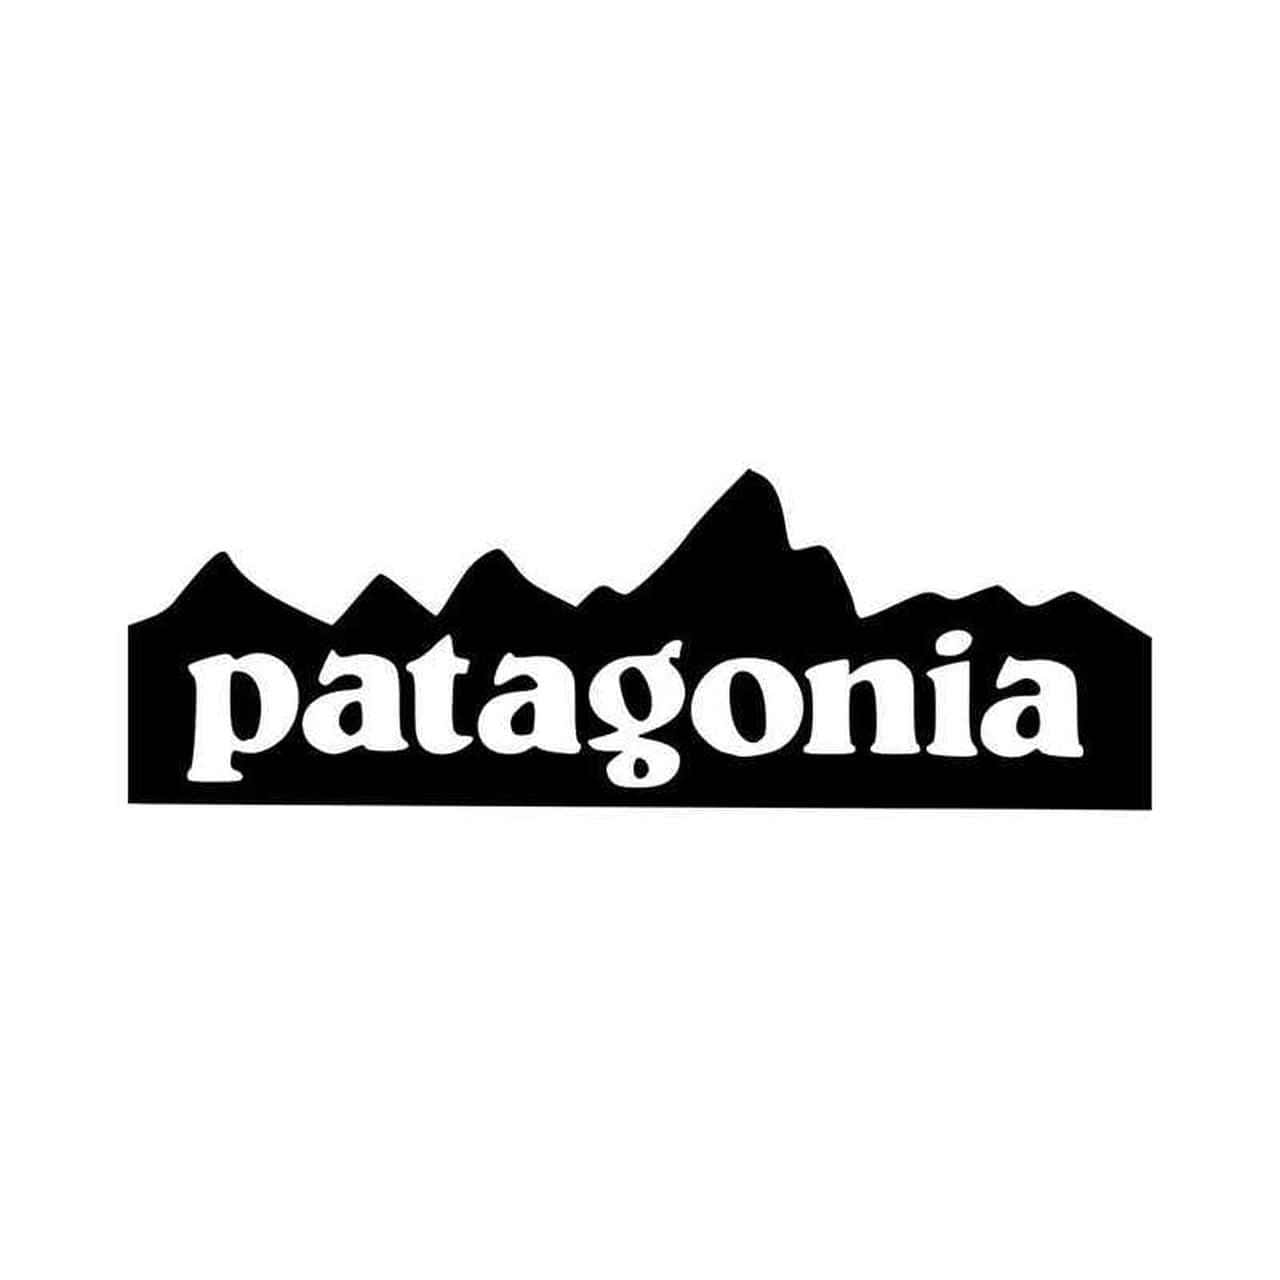 Frakobldig Fra Livets Distraktioner Og Nyd Skønheden I Patagonien.